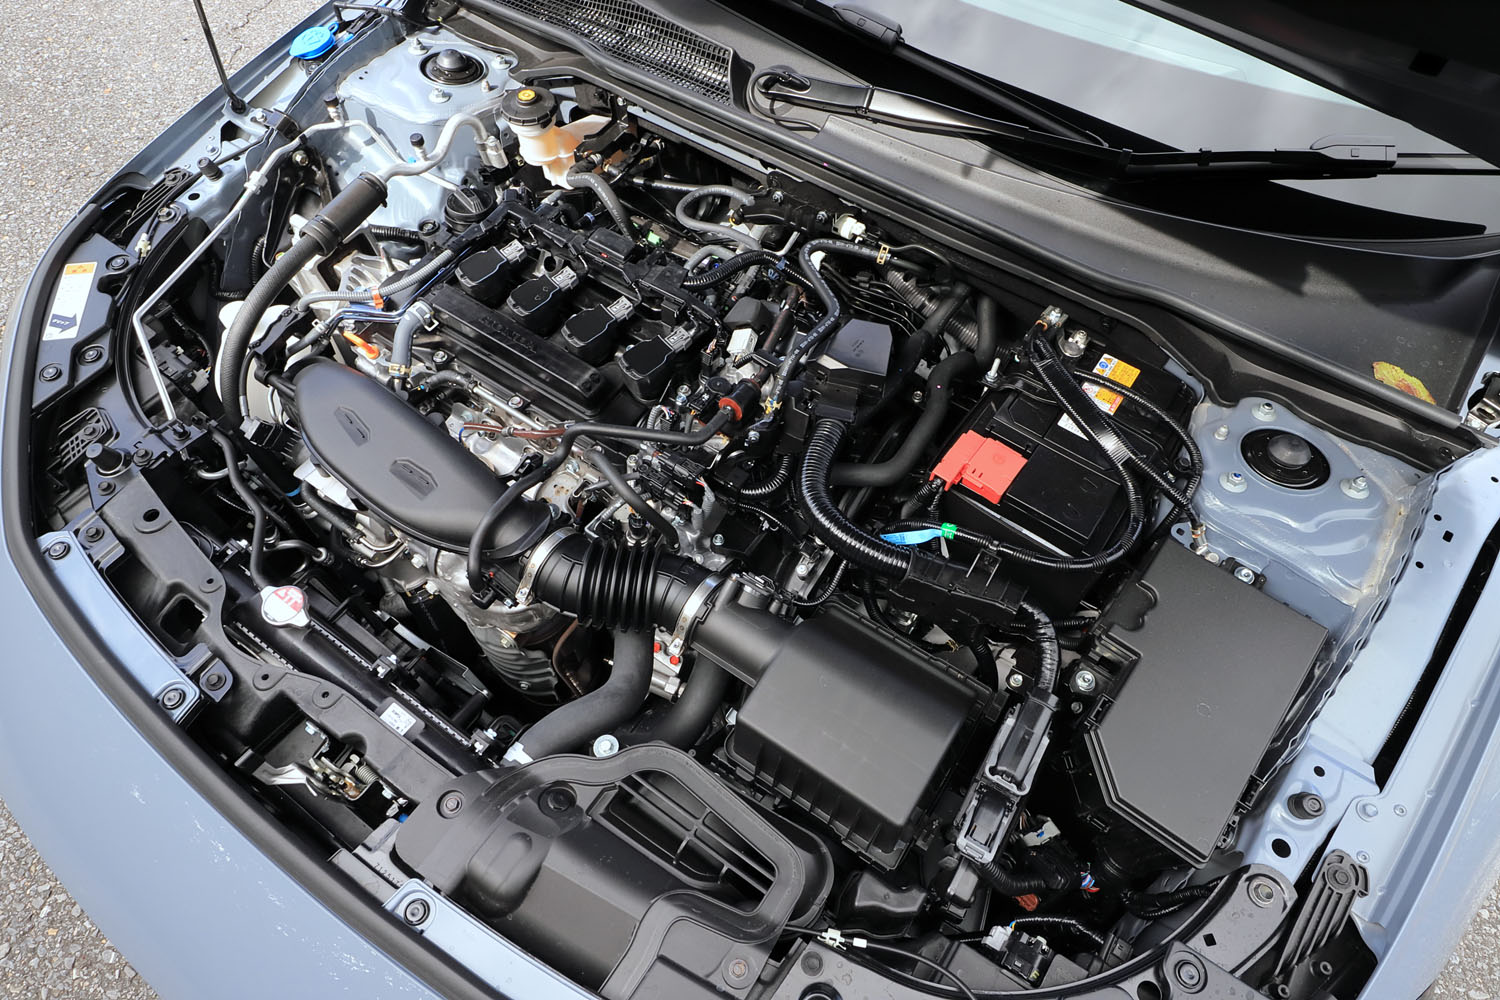 1.5リッターターボエンジンは、ターボチャージャーや吸排気系を見直すことで操作応答性を改善。燃費はMT車、CVT車ともに16.3km/リッターとされている（WLTCモード）。